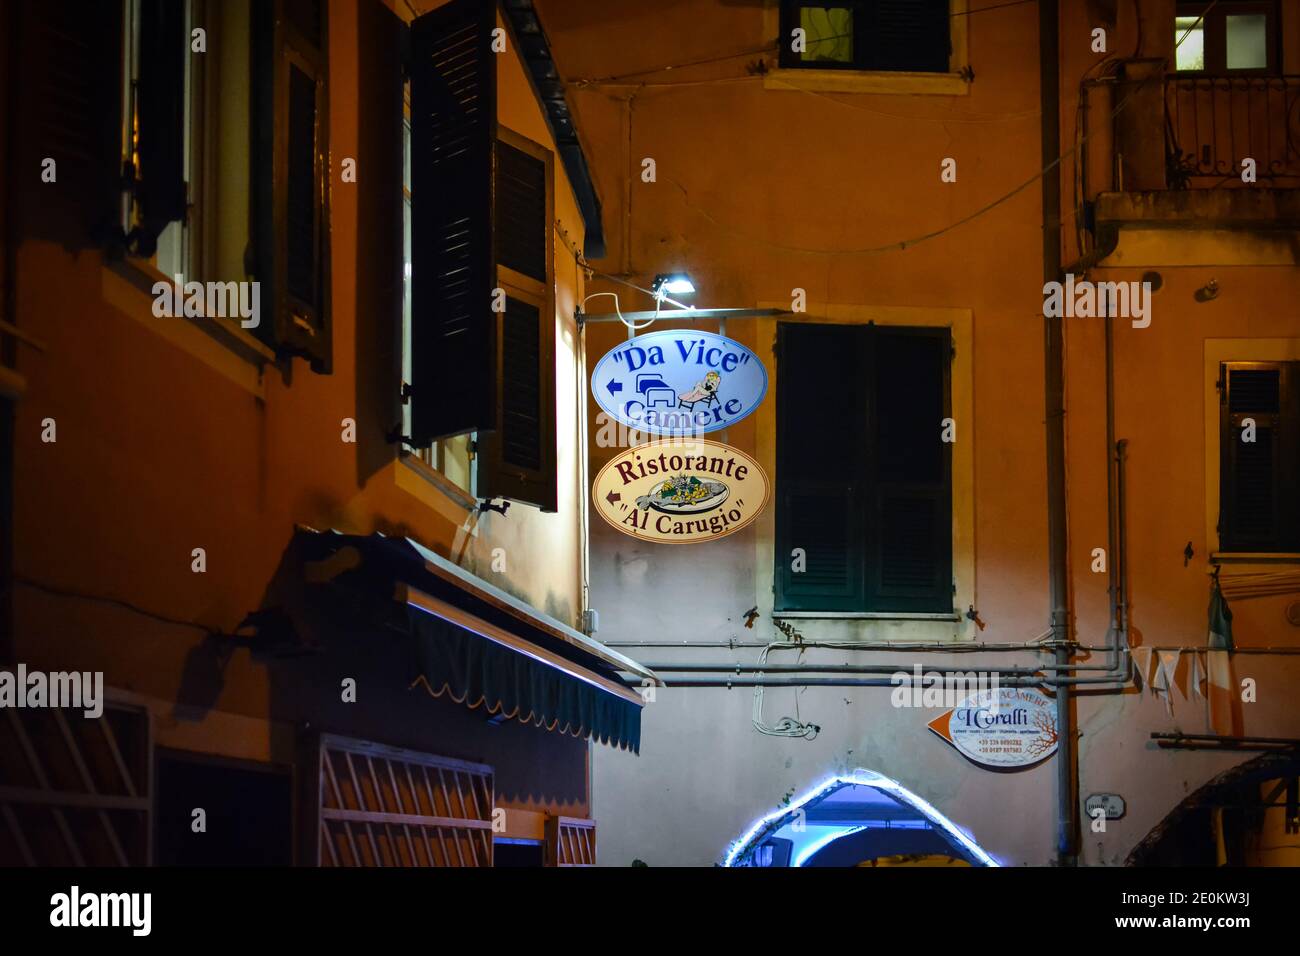 Night view of the Al Carugio Restaurant and Da Vice Inn sign in the village of Monterosso al Mare, Italy, part of the Cinque Terre. Stock Photo